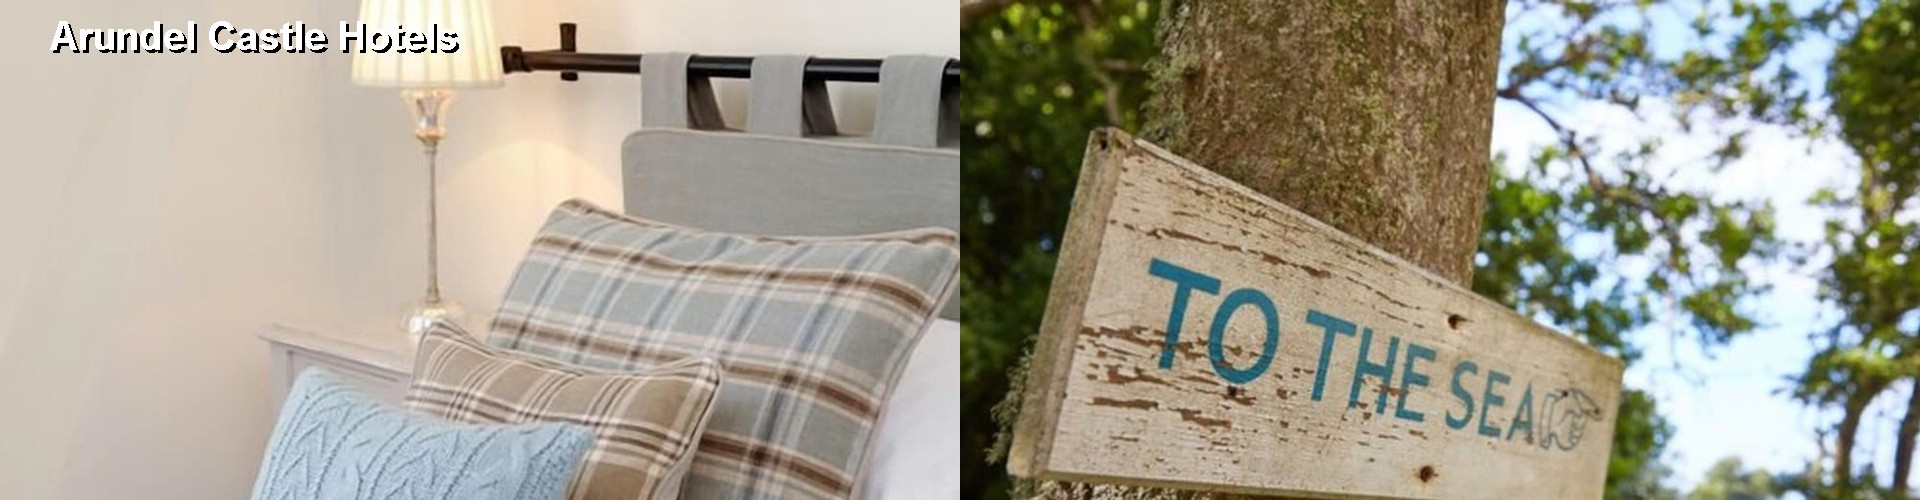 5 Best Hotels near Arundel Castle